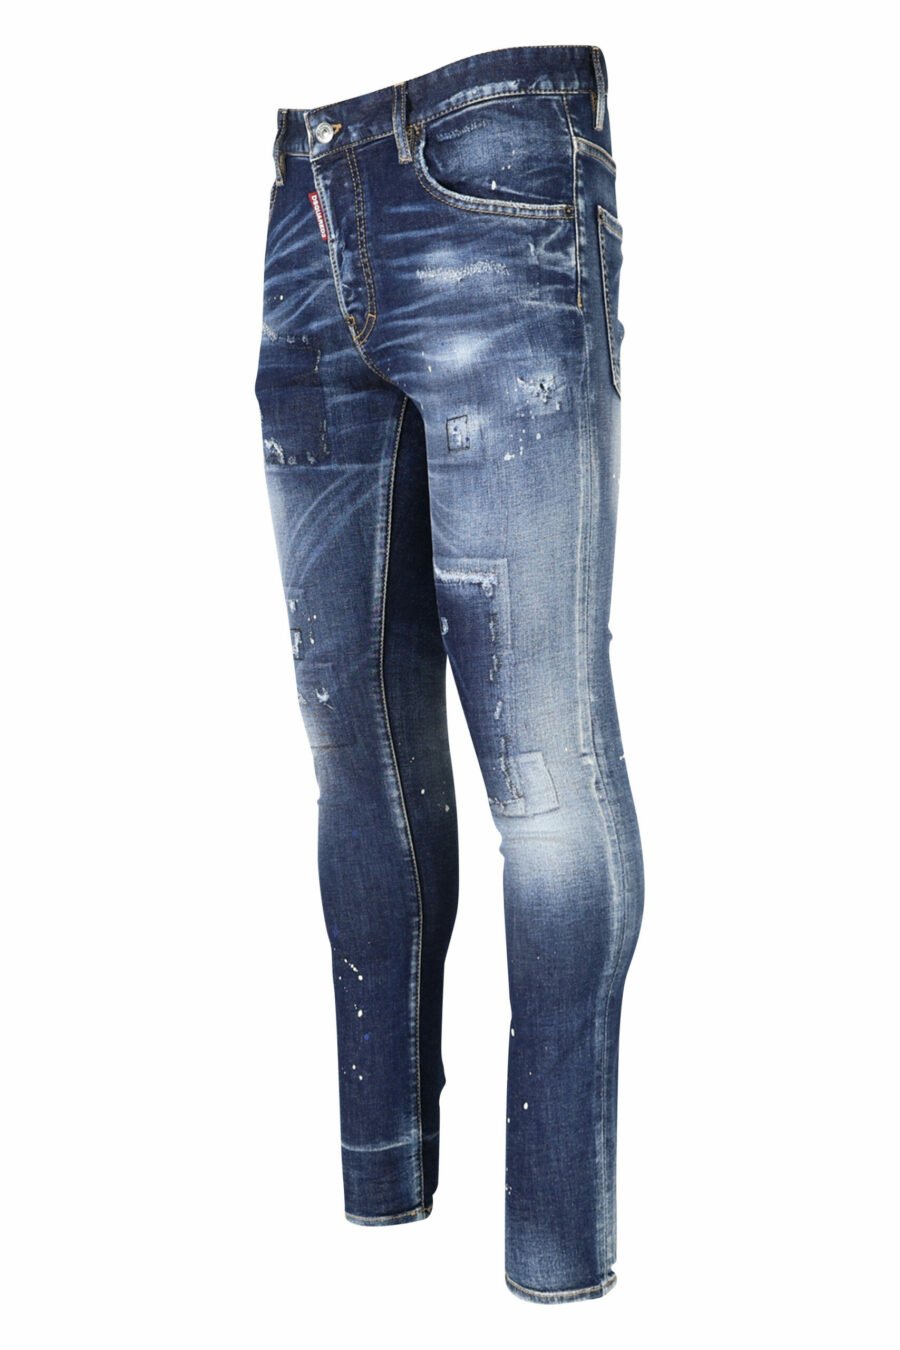 Pantalón vaquero "super twinky jean" azul con parche y desgastado - 8054148104863 1 scaled